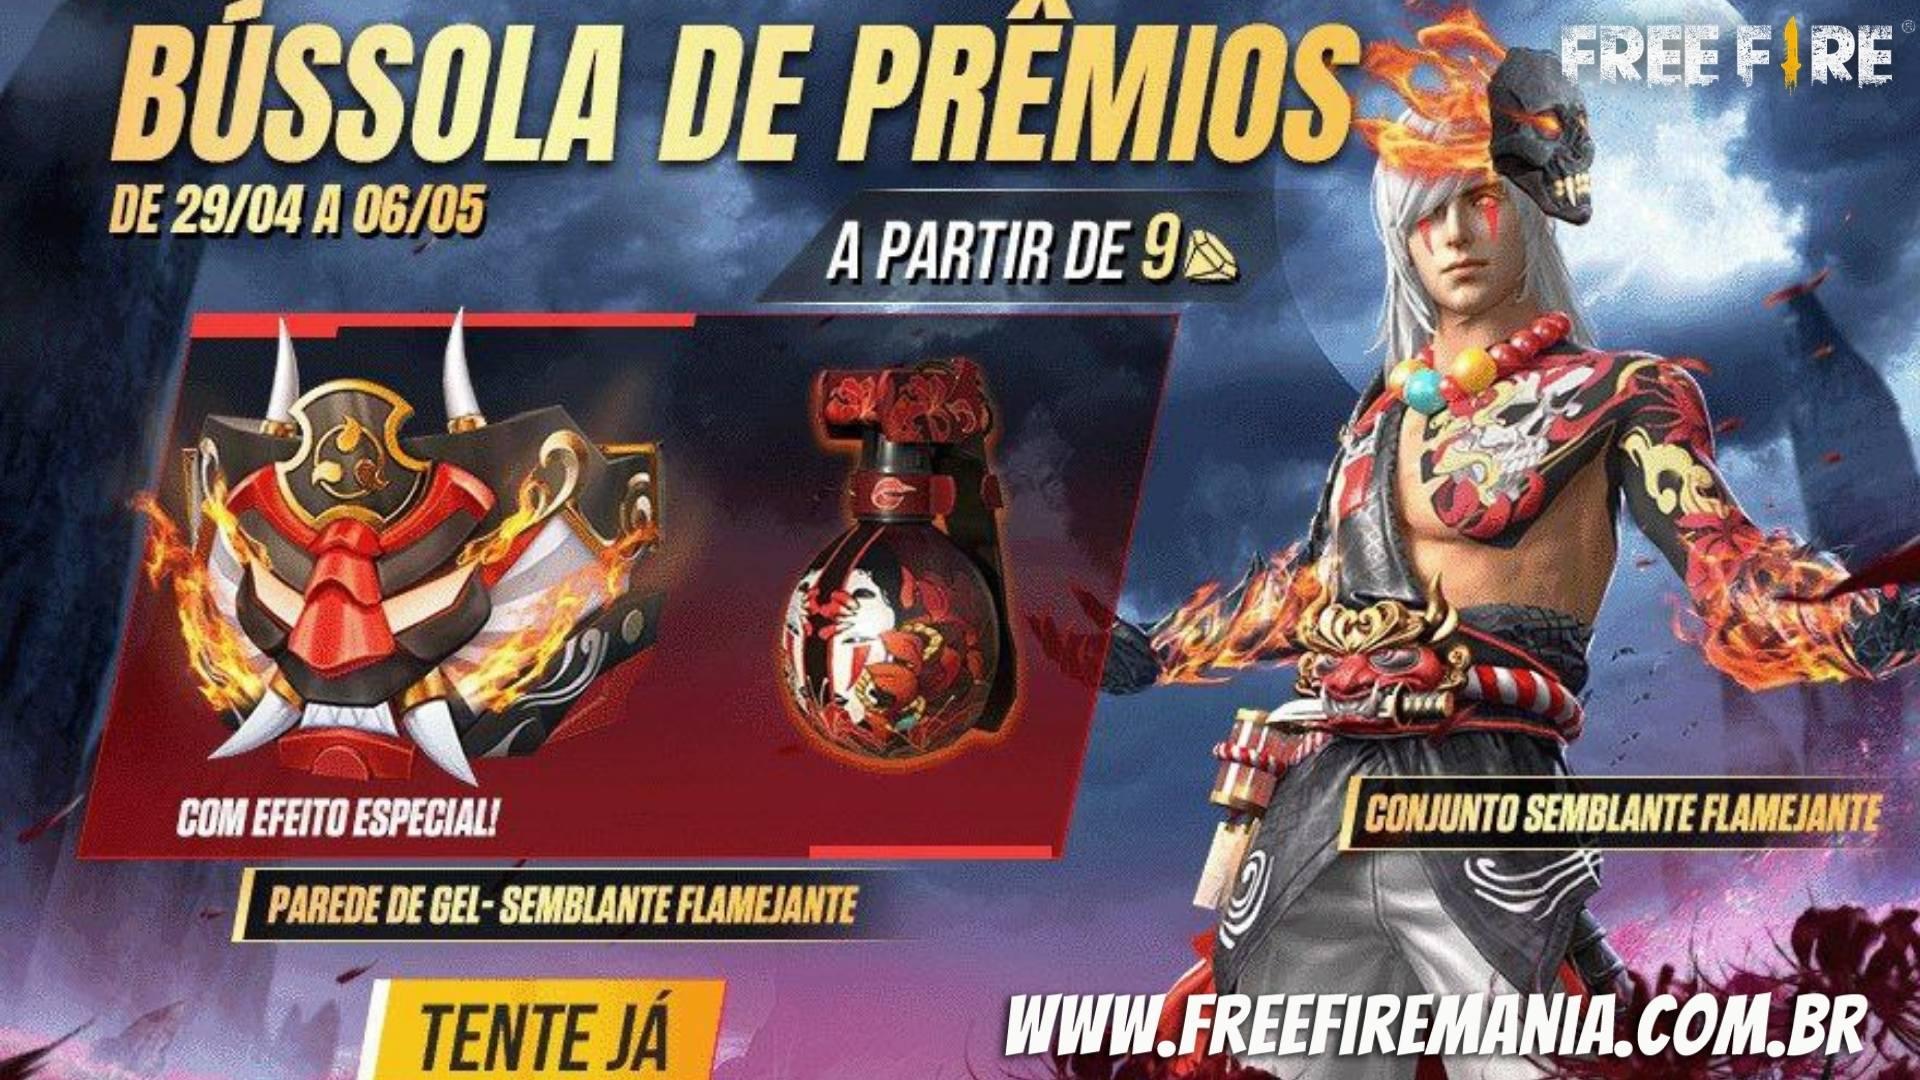 Free Fire recebe evento Bússola de Prêmios nesta sexta; confira as atrações